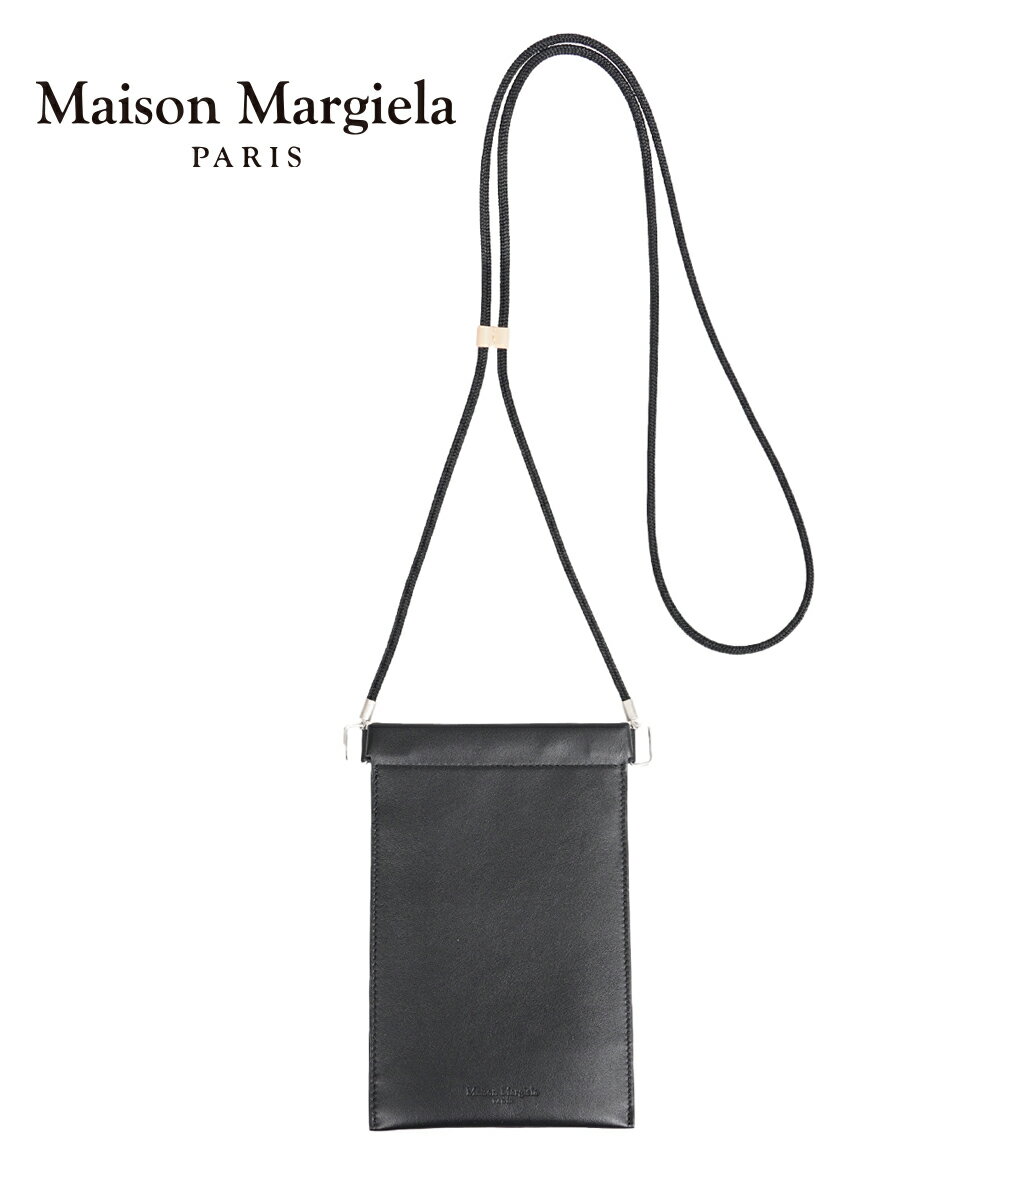 Maison Margiela / メゾン マルジェラ : IPHONE POUCH CASE : iPhone アイフォン ポーチ ケース オールシーズン ブラック レザー ネックホルダー ギフト プレゼント メンズ レディース ユニセックス : S55UI0207-P4303【BJB】